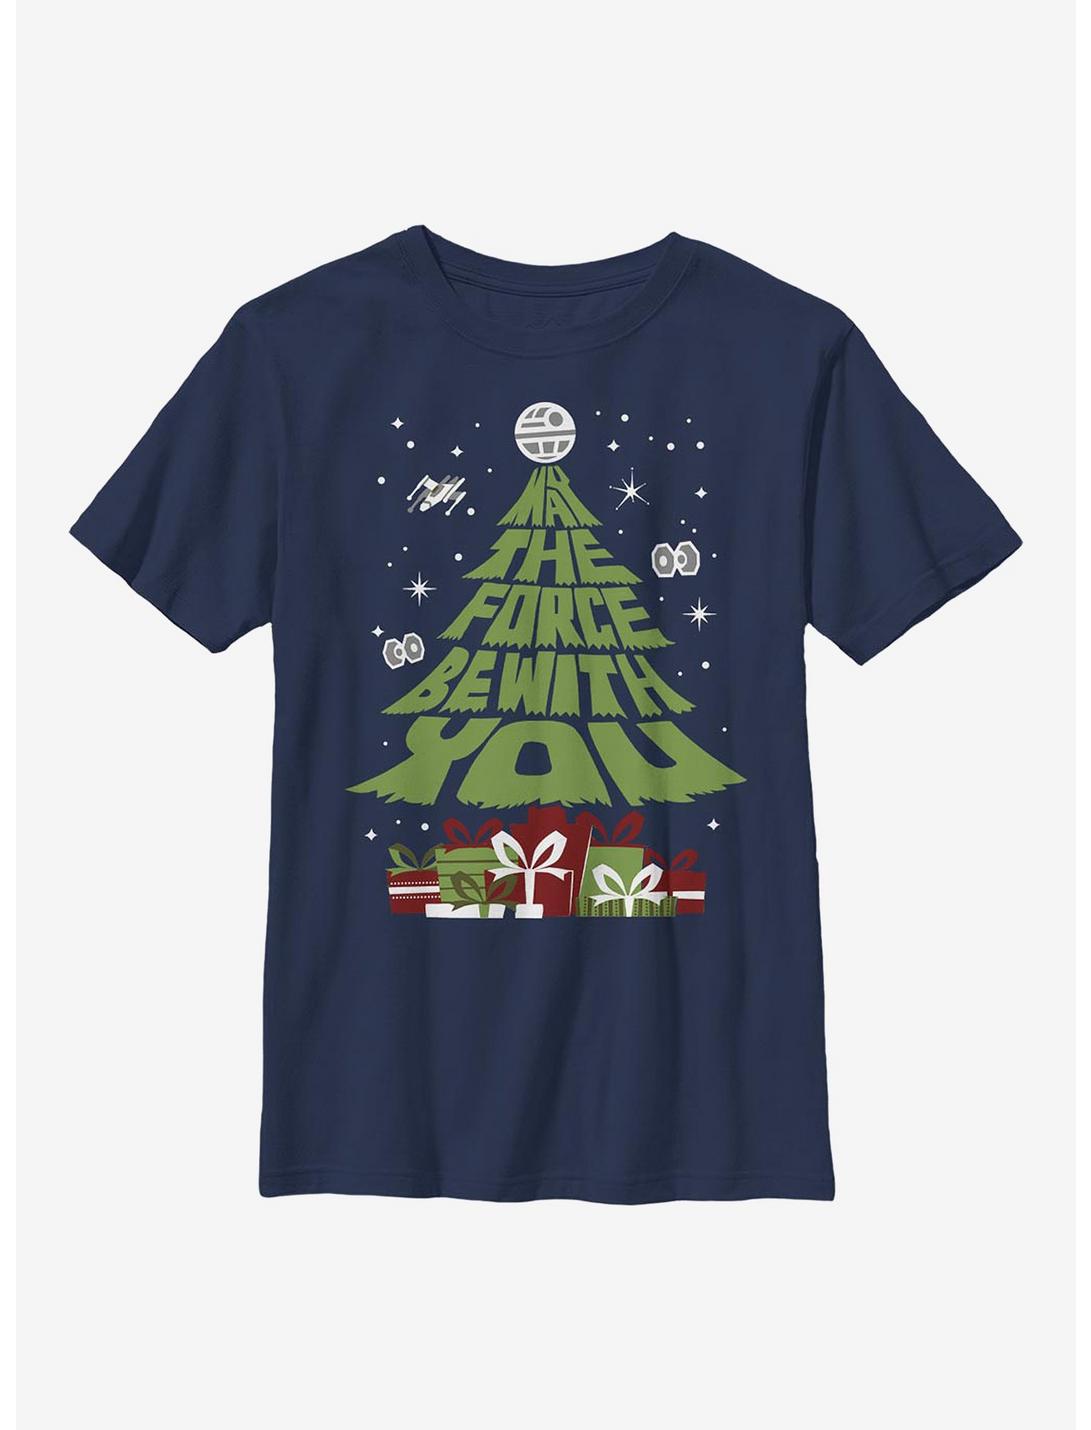 Star Wars Tree Youth T-Shirt, NAVY, hi-res